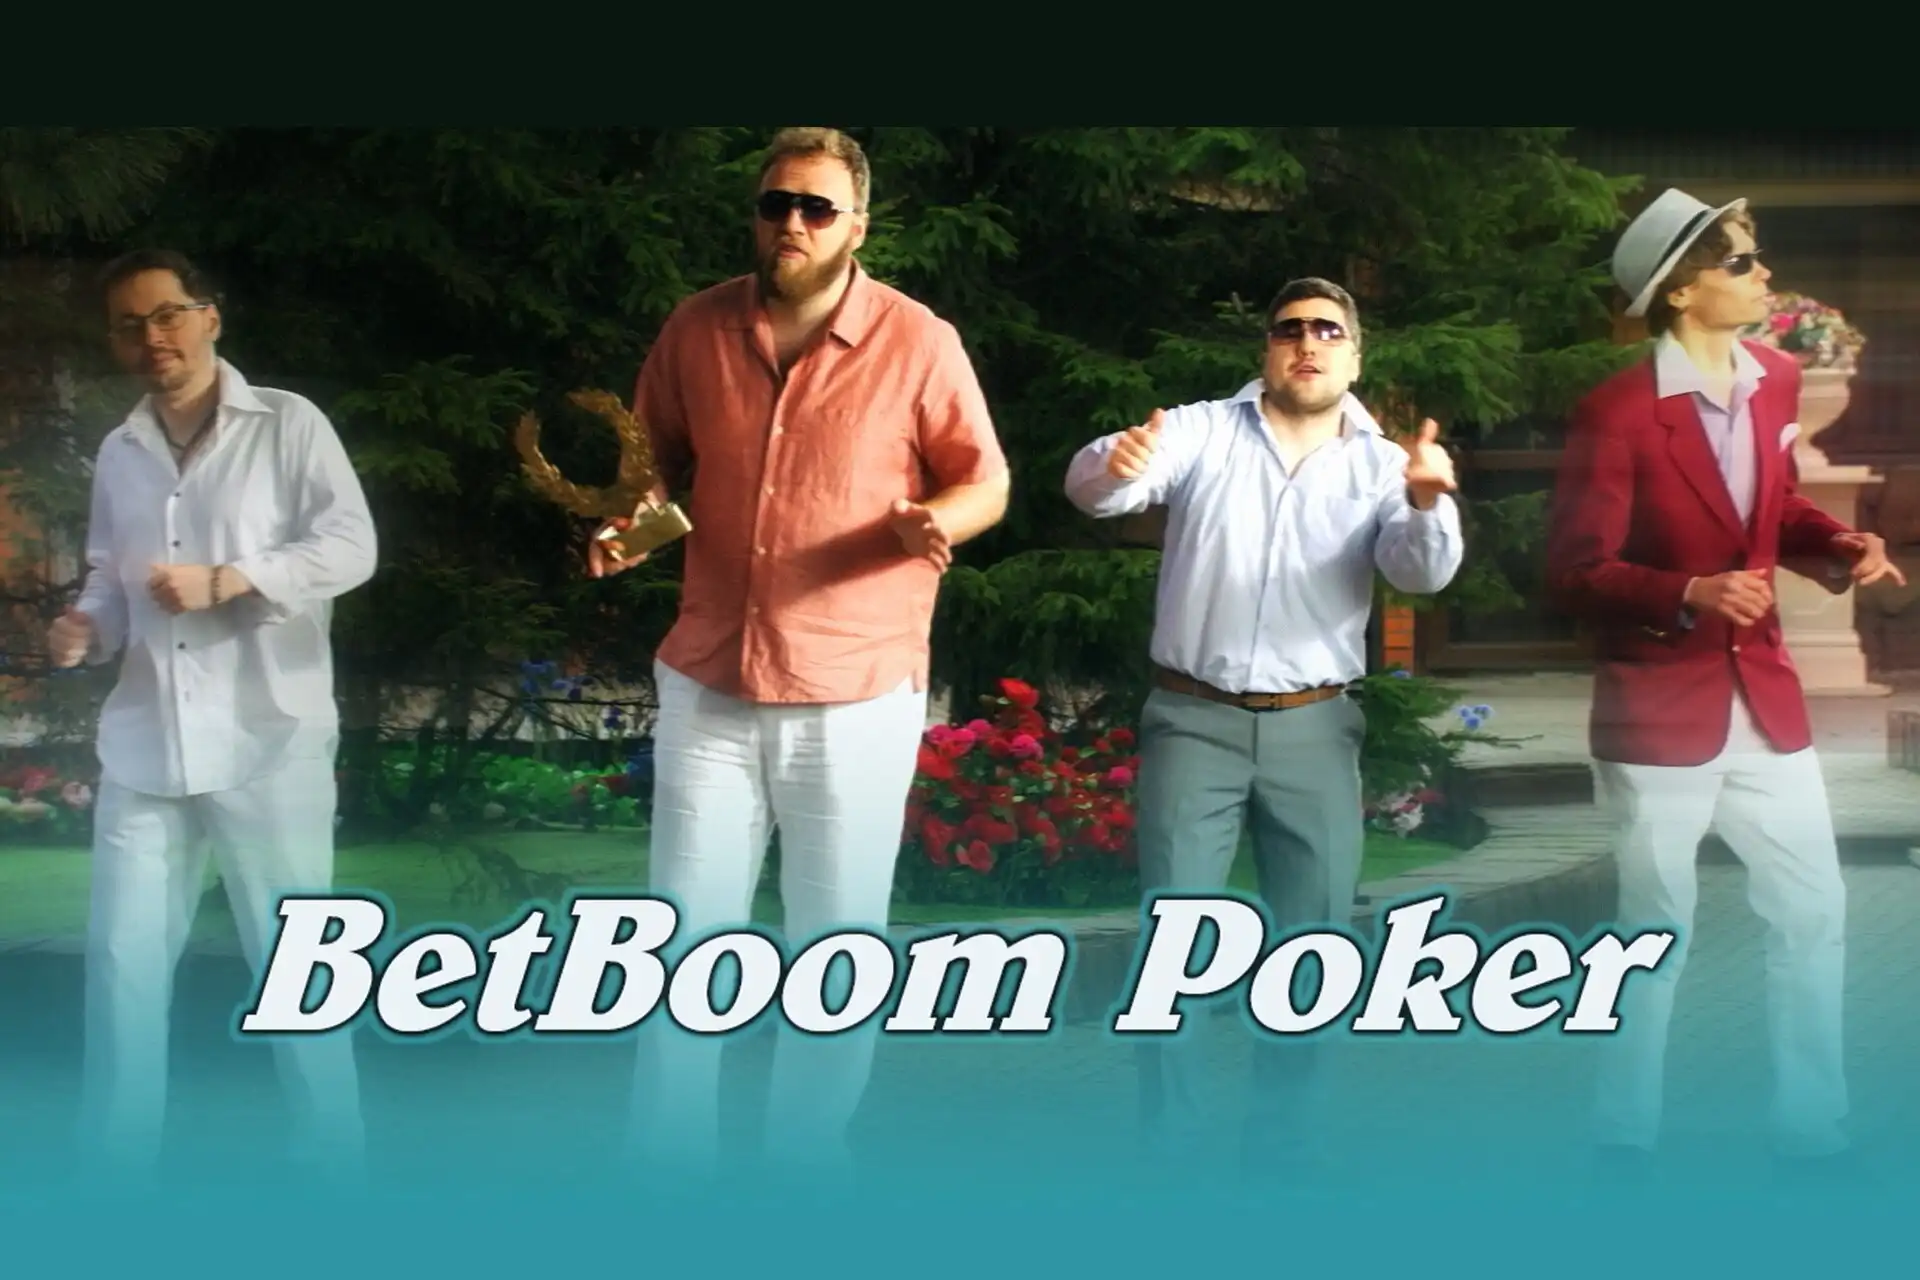 Анонсирован турнир BetBoom Poker. Участники — резиденты ЧБД, стримеры и медиазвезды